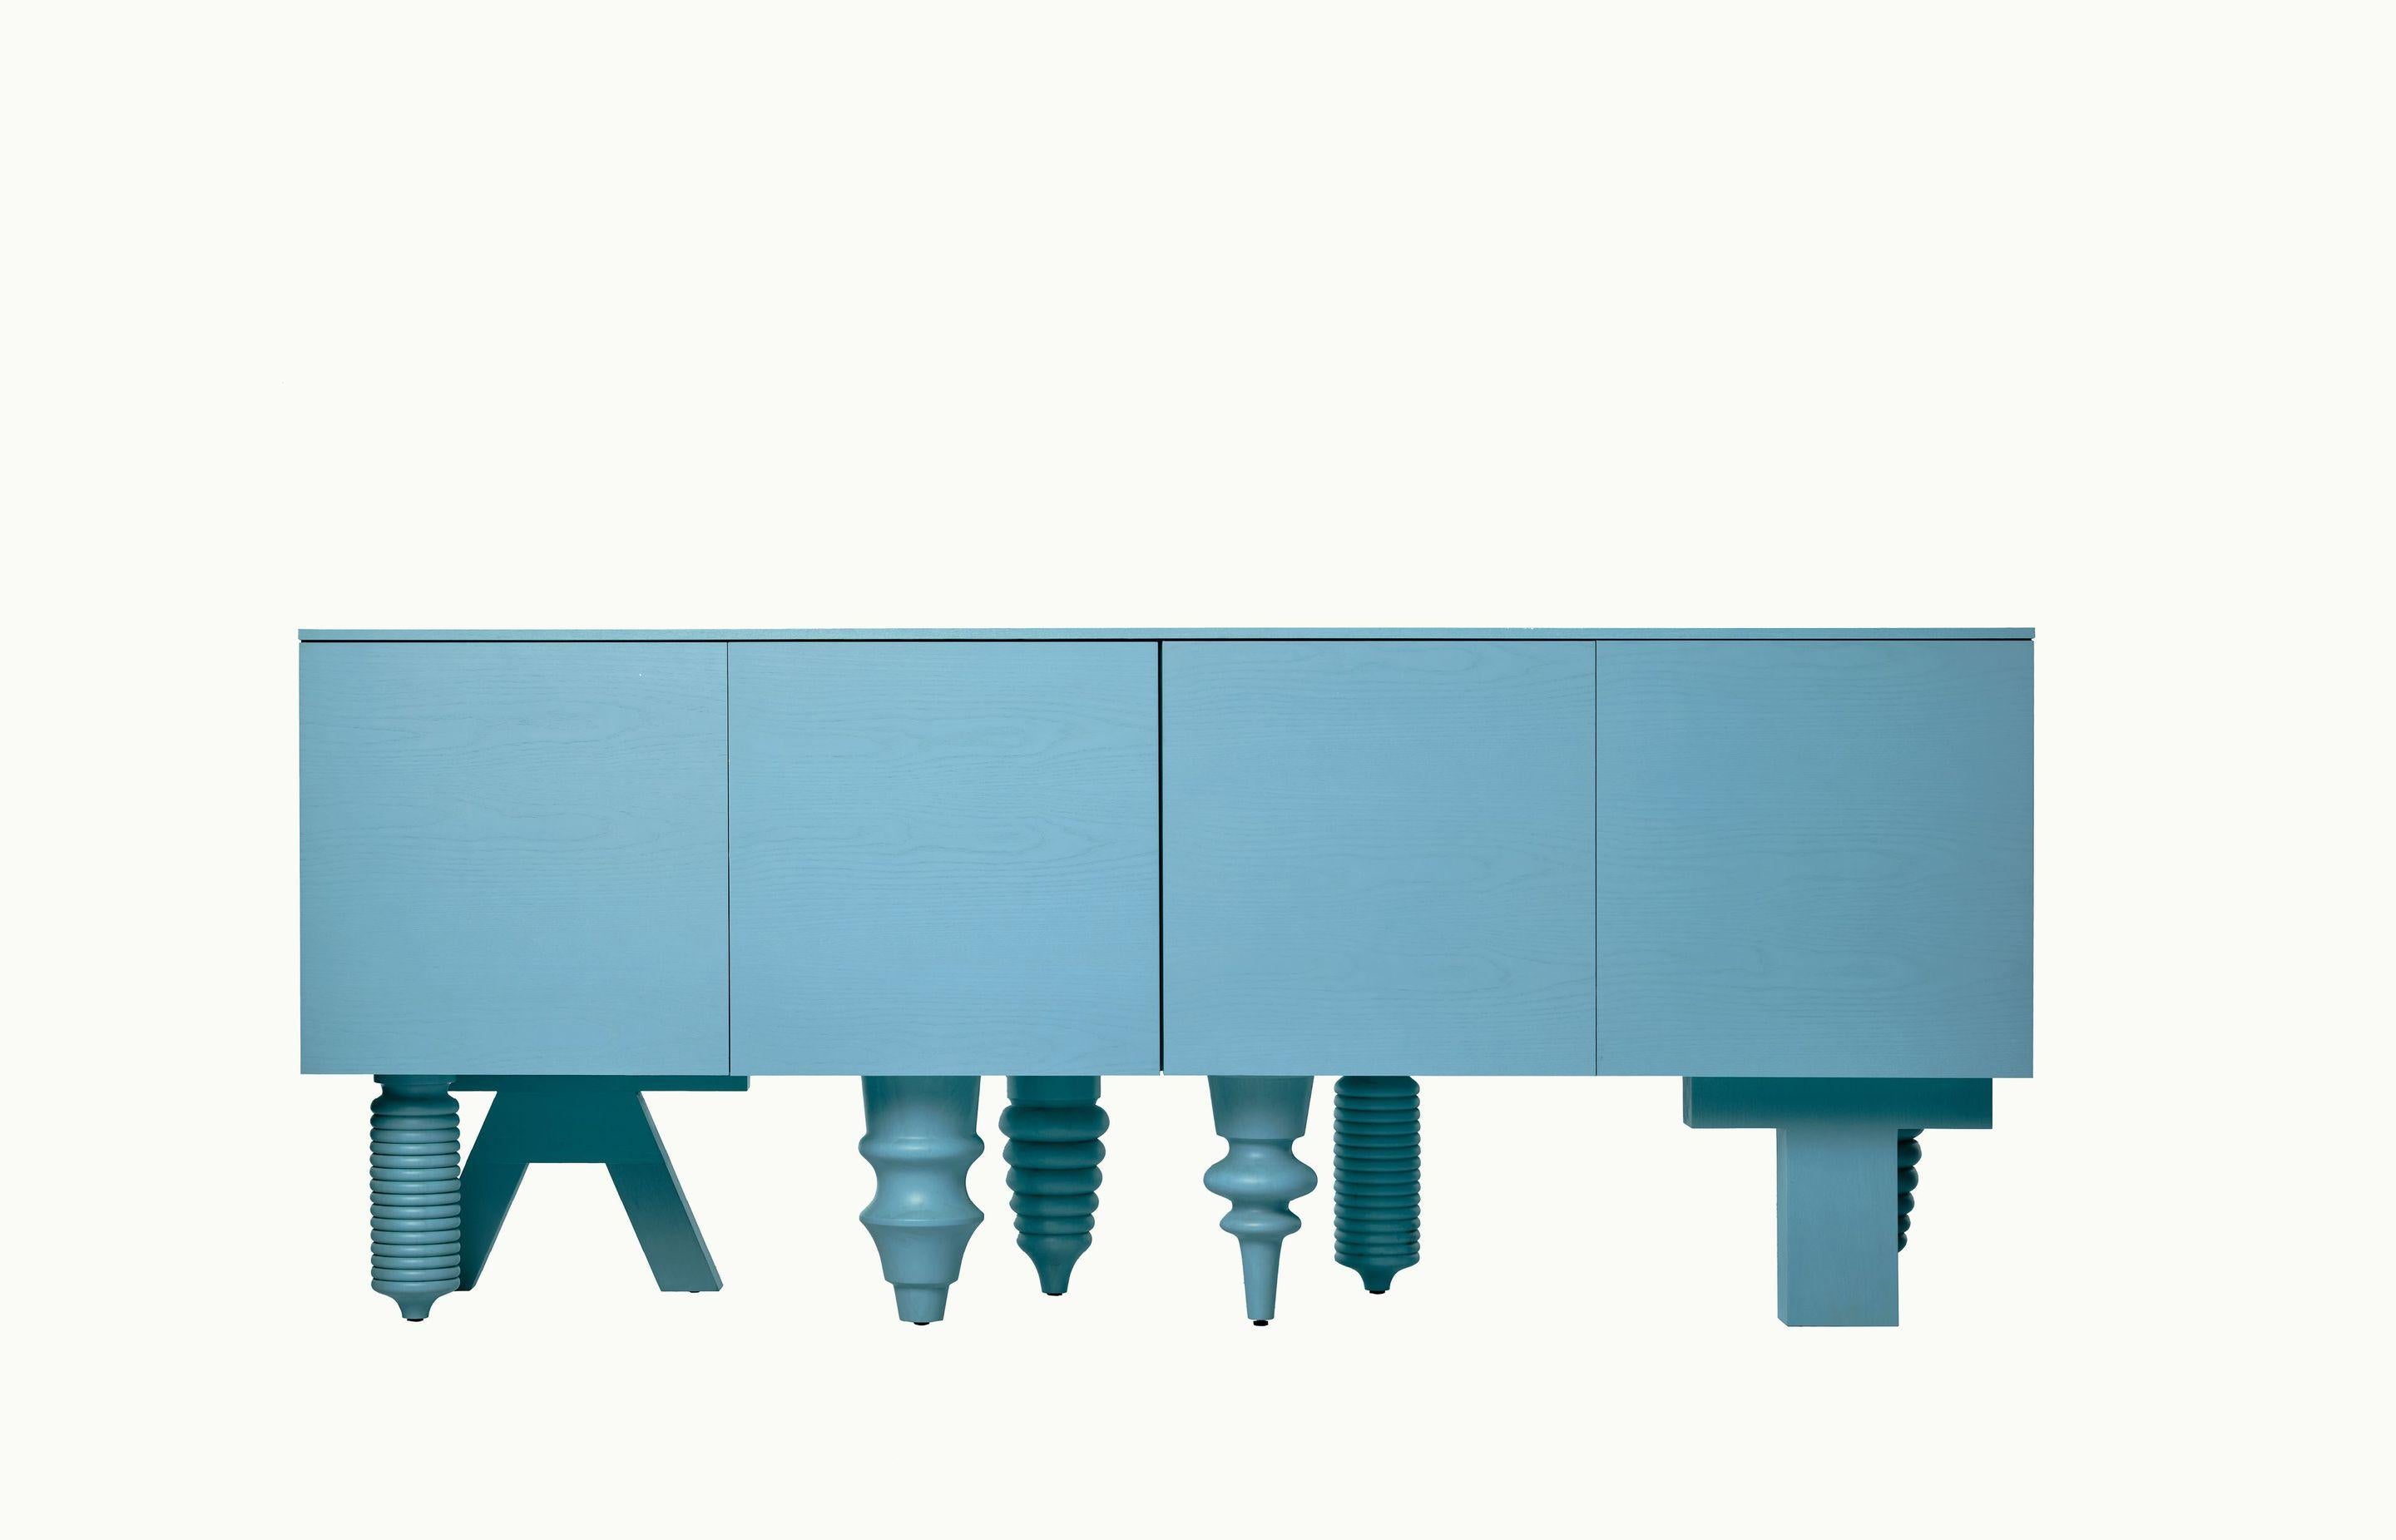 2M Multileg Schrank in Esche Blau von Jaime Hayon für BD Barcelona

Er kann mit zwölf ausgeklügelten Beinoptionen, individuell gestaltbaren Oberflächen und Farben sowie einer Vielzahl von Stauraumvarianten einzigartig konfiguriert werden. Das